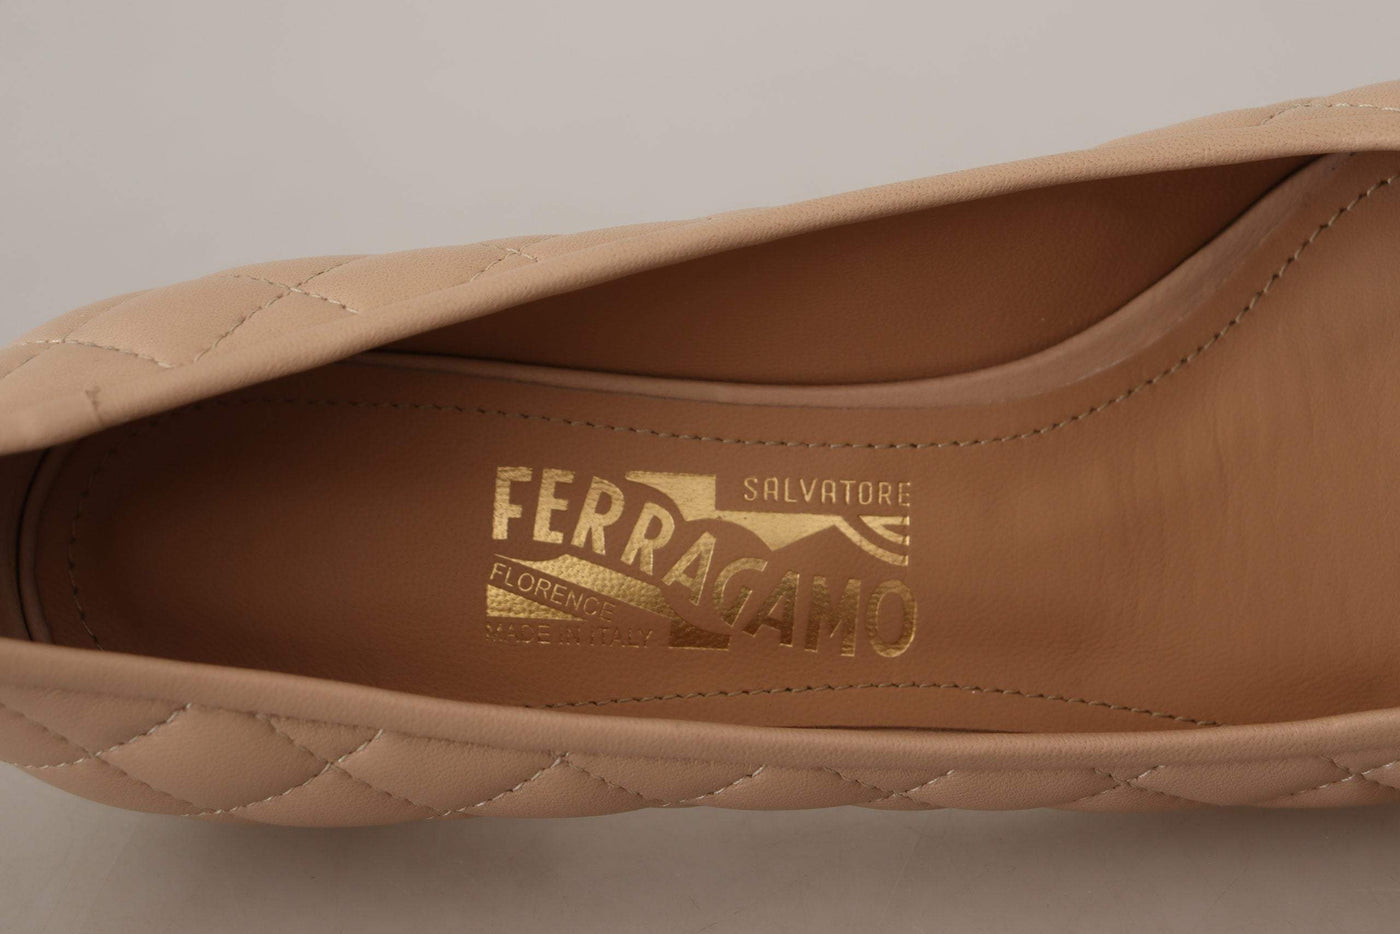 Salvatore Ferragamo Beige and Black Nappa Leather Pumps Beige, EU36.5/US6, EU36/US5.5, EU37/US6.5, EU38.5/US8, EU39.5/US9, EU39/US8.5, feed-1, Pumps - Women - Shoes, Salvatore Ferragamo, Shoes - New Arrivals, Women - New Arrivals at SEYMAYKA